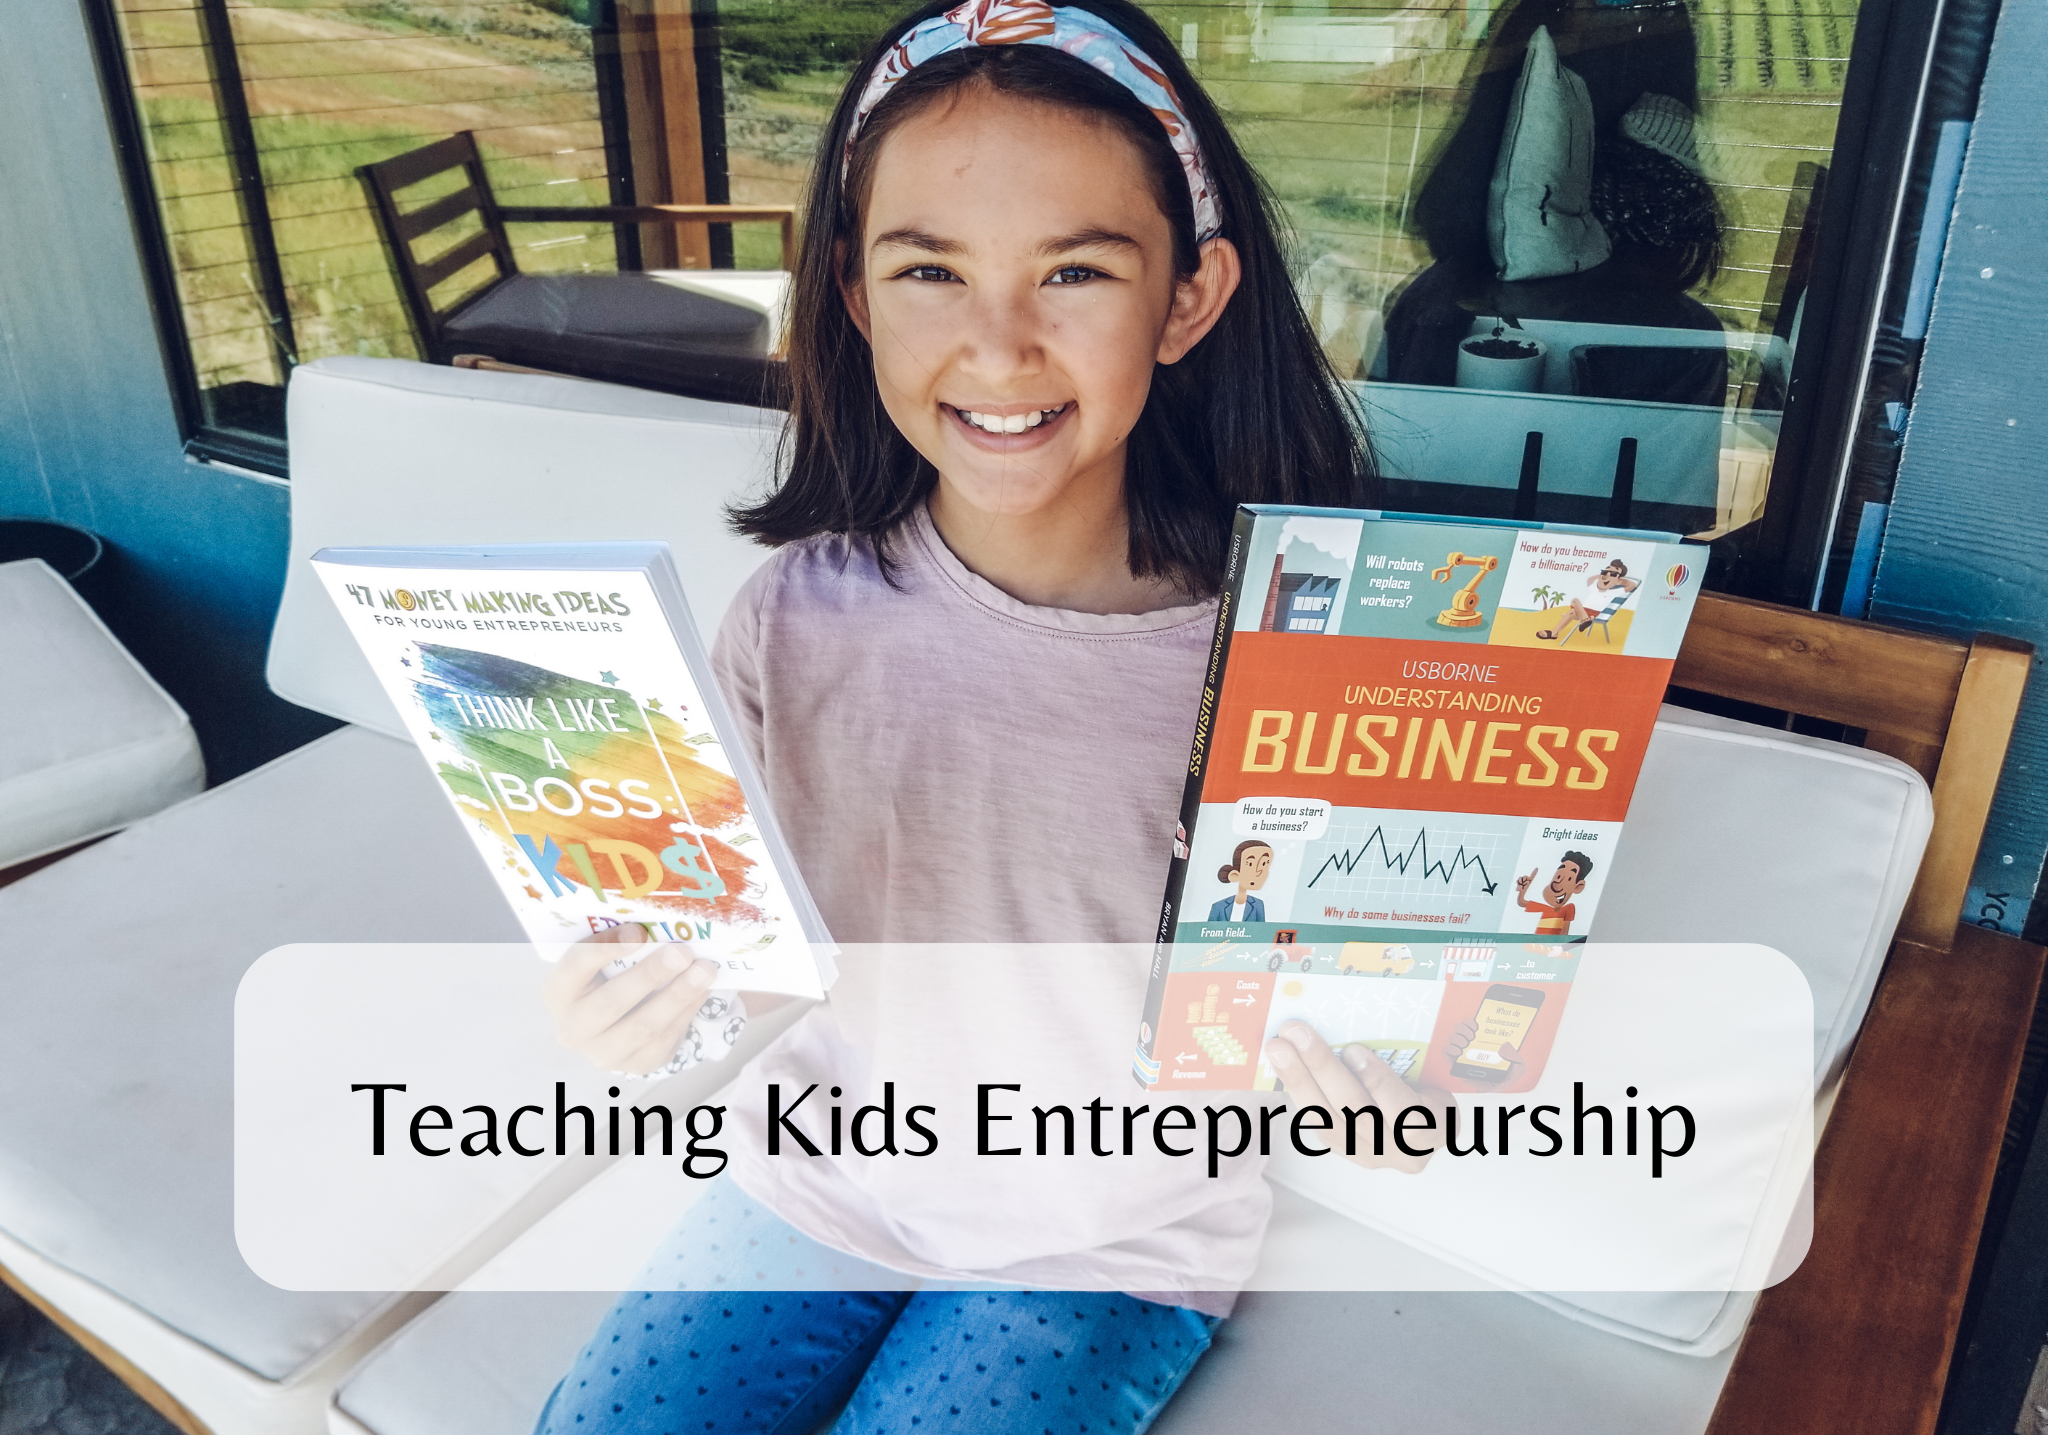 Teaching Kids Entrepreneurship